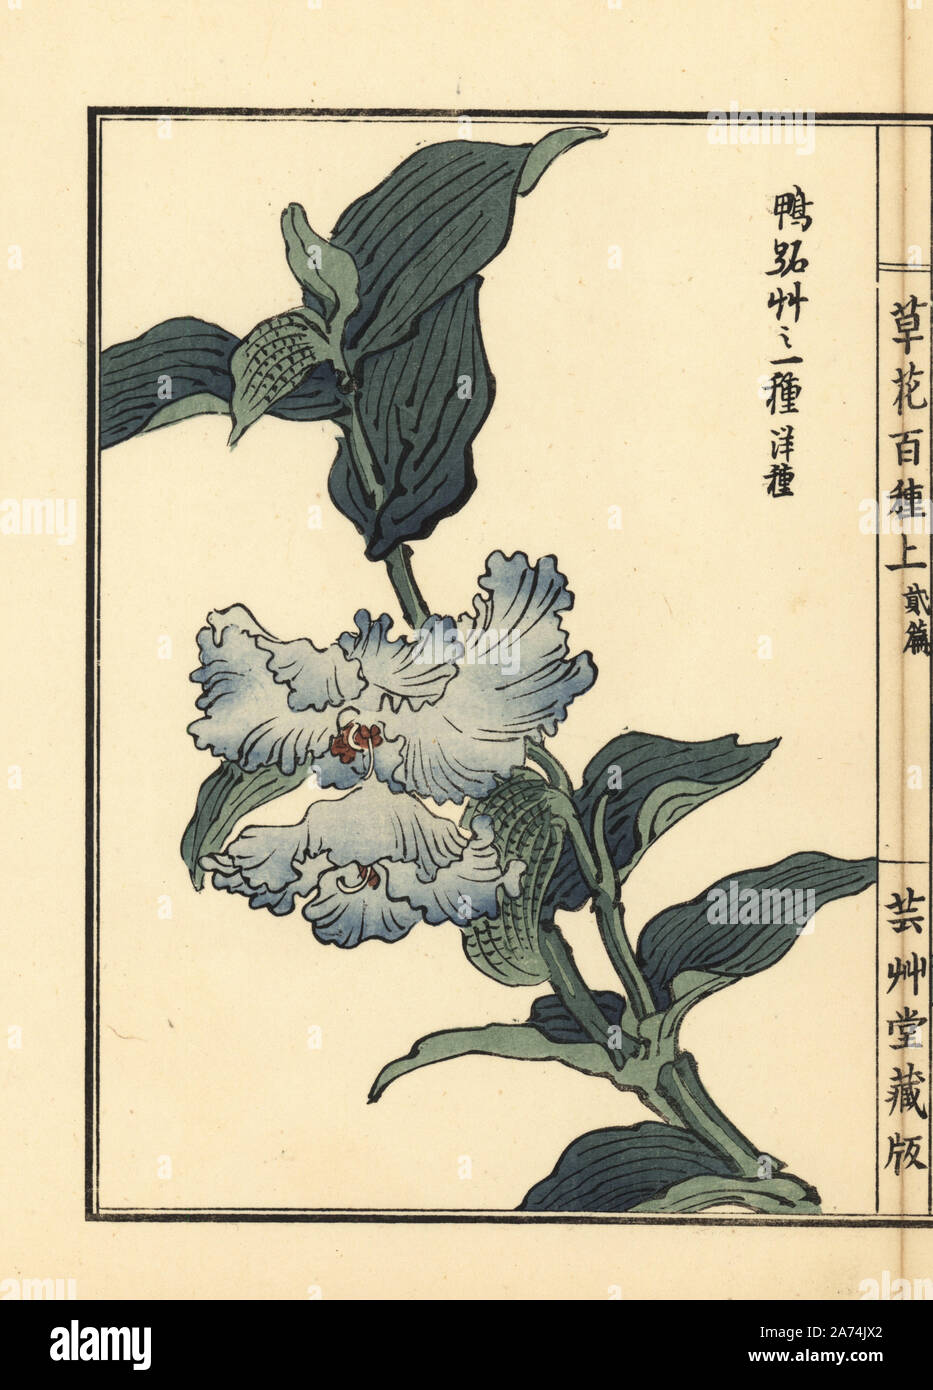 Tsuyukusa or Asiatic dayflower, Commelina communis. Handcoloured woodblock print by Kono Bairei from Kusa Bana Hyakushu (One Hundred Varieties of Flowers), Tokyo, Yamada, 1901. Stock Photo